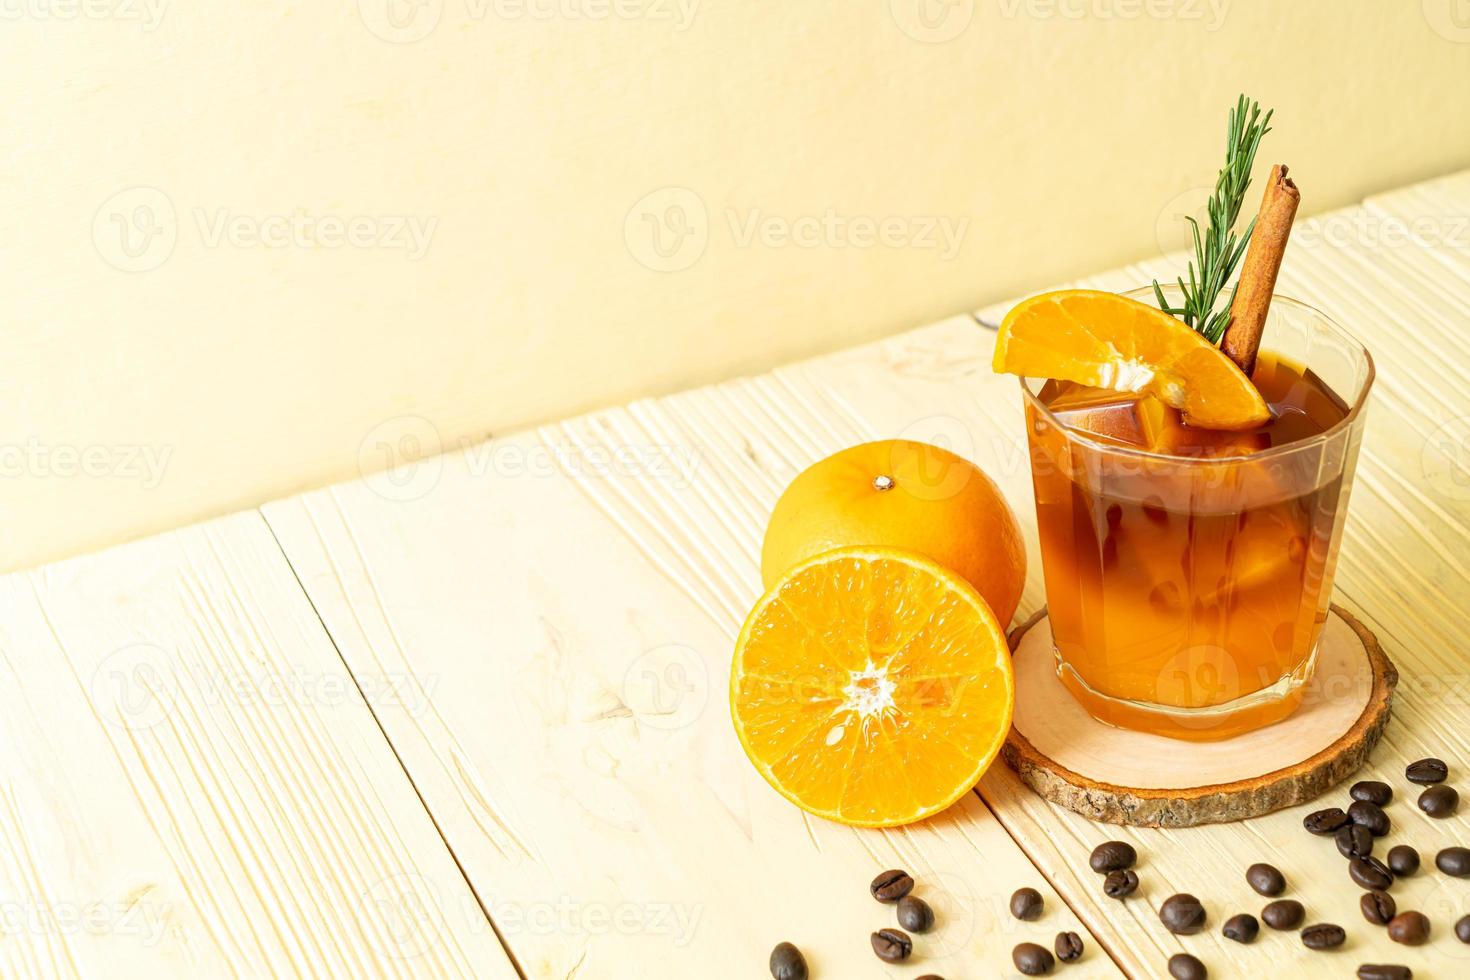 ett glas iced americano svart kaffe och ett lager apelsin- och citronsaft dekorerad med rosmarin och kanel på träbakgrund foto